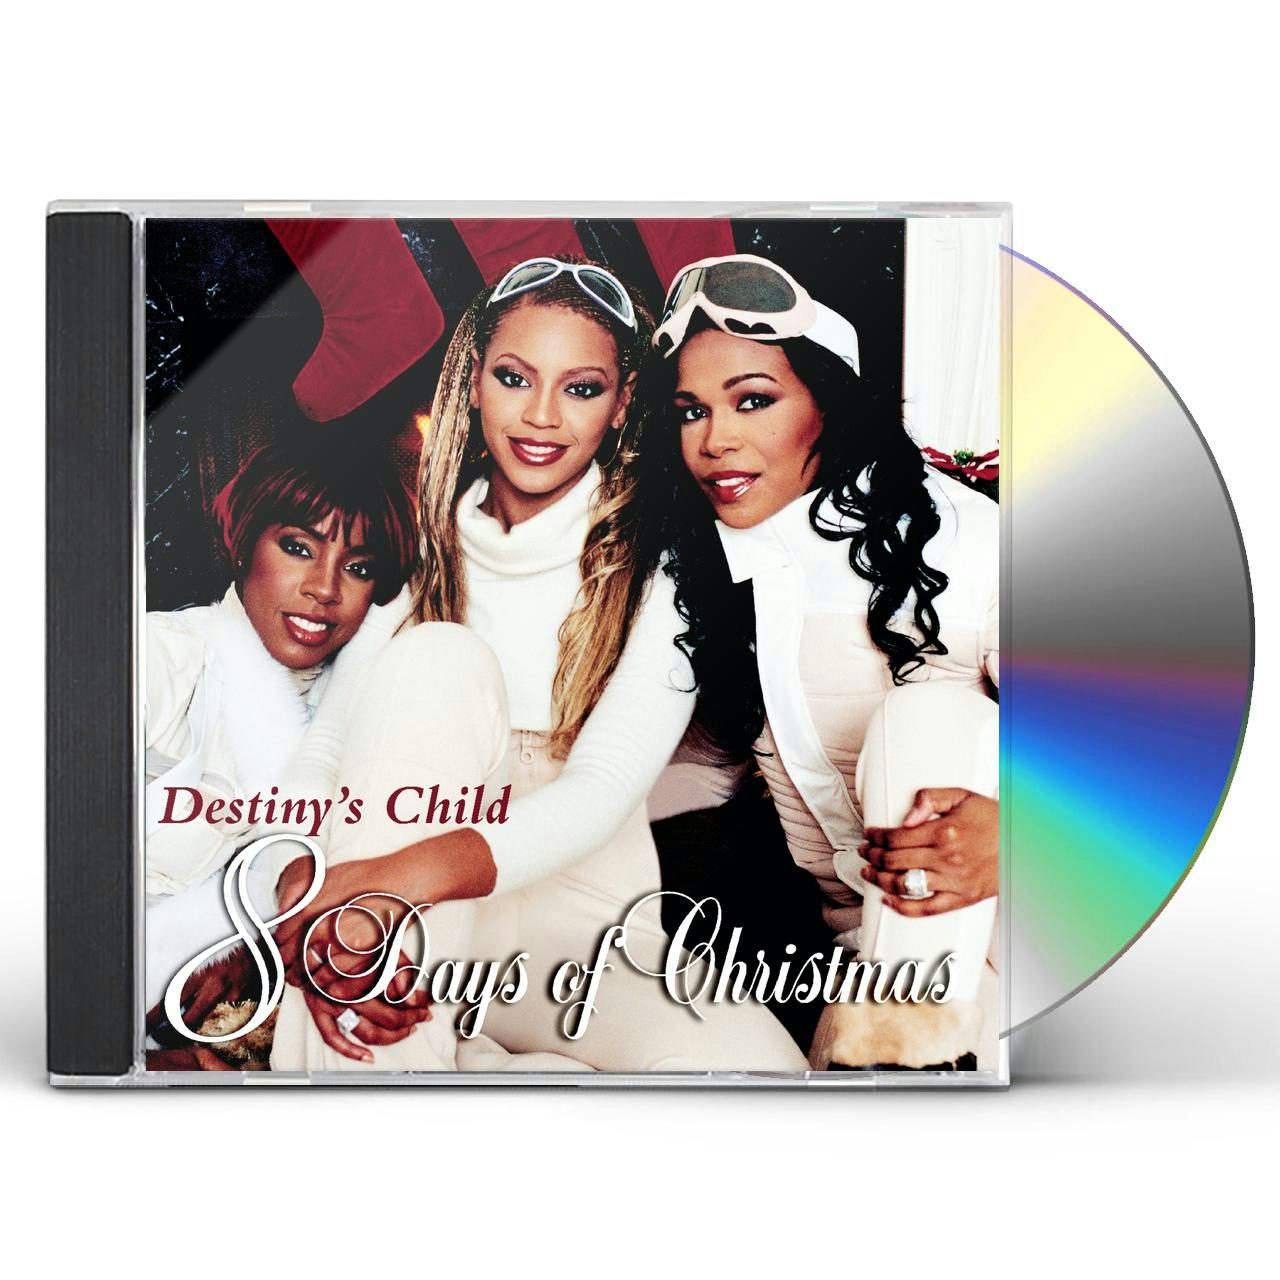 Destiny's Child Store: Official Merch & Vinyl